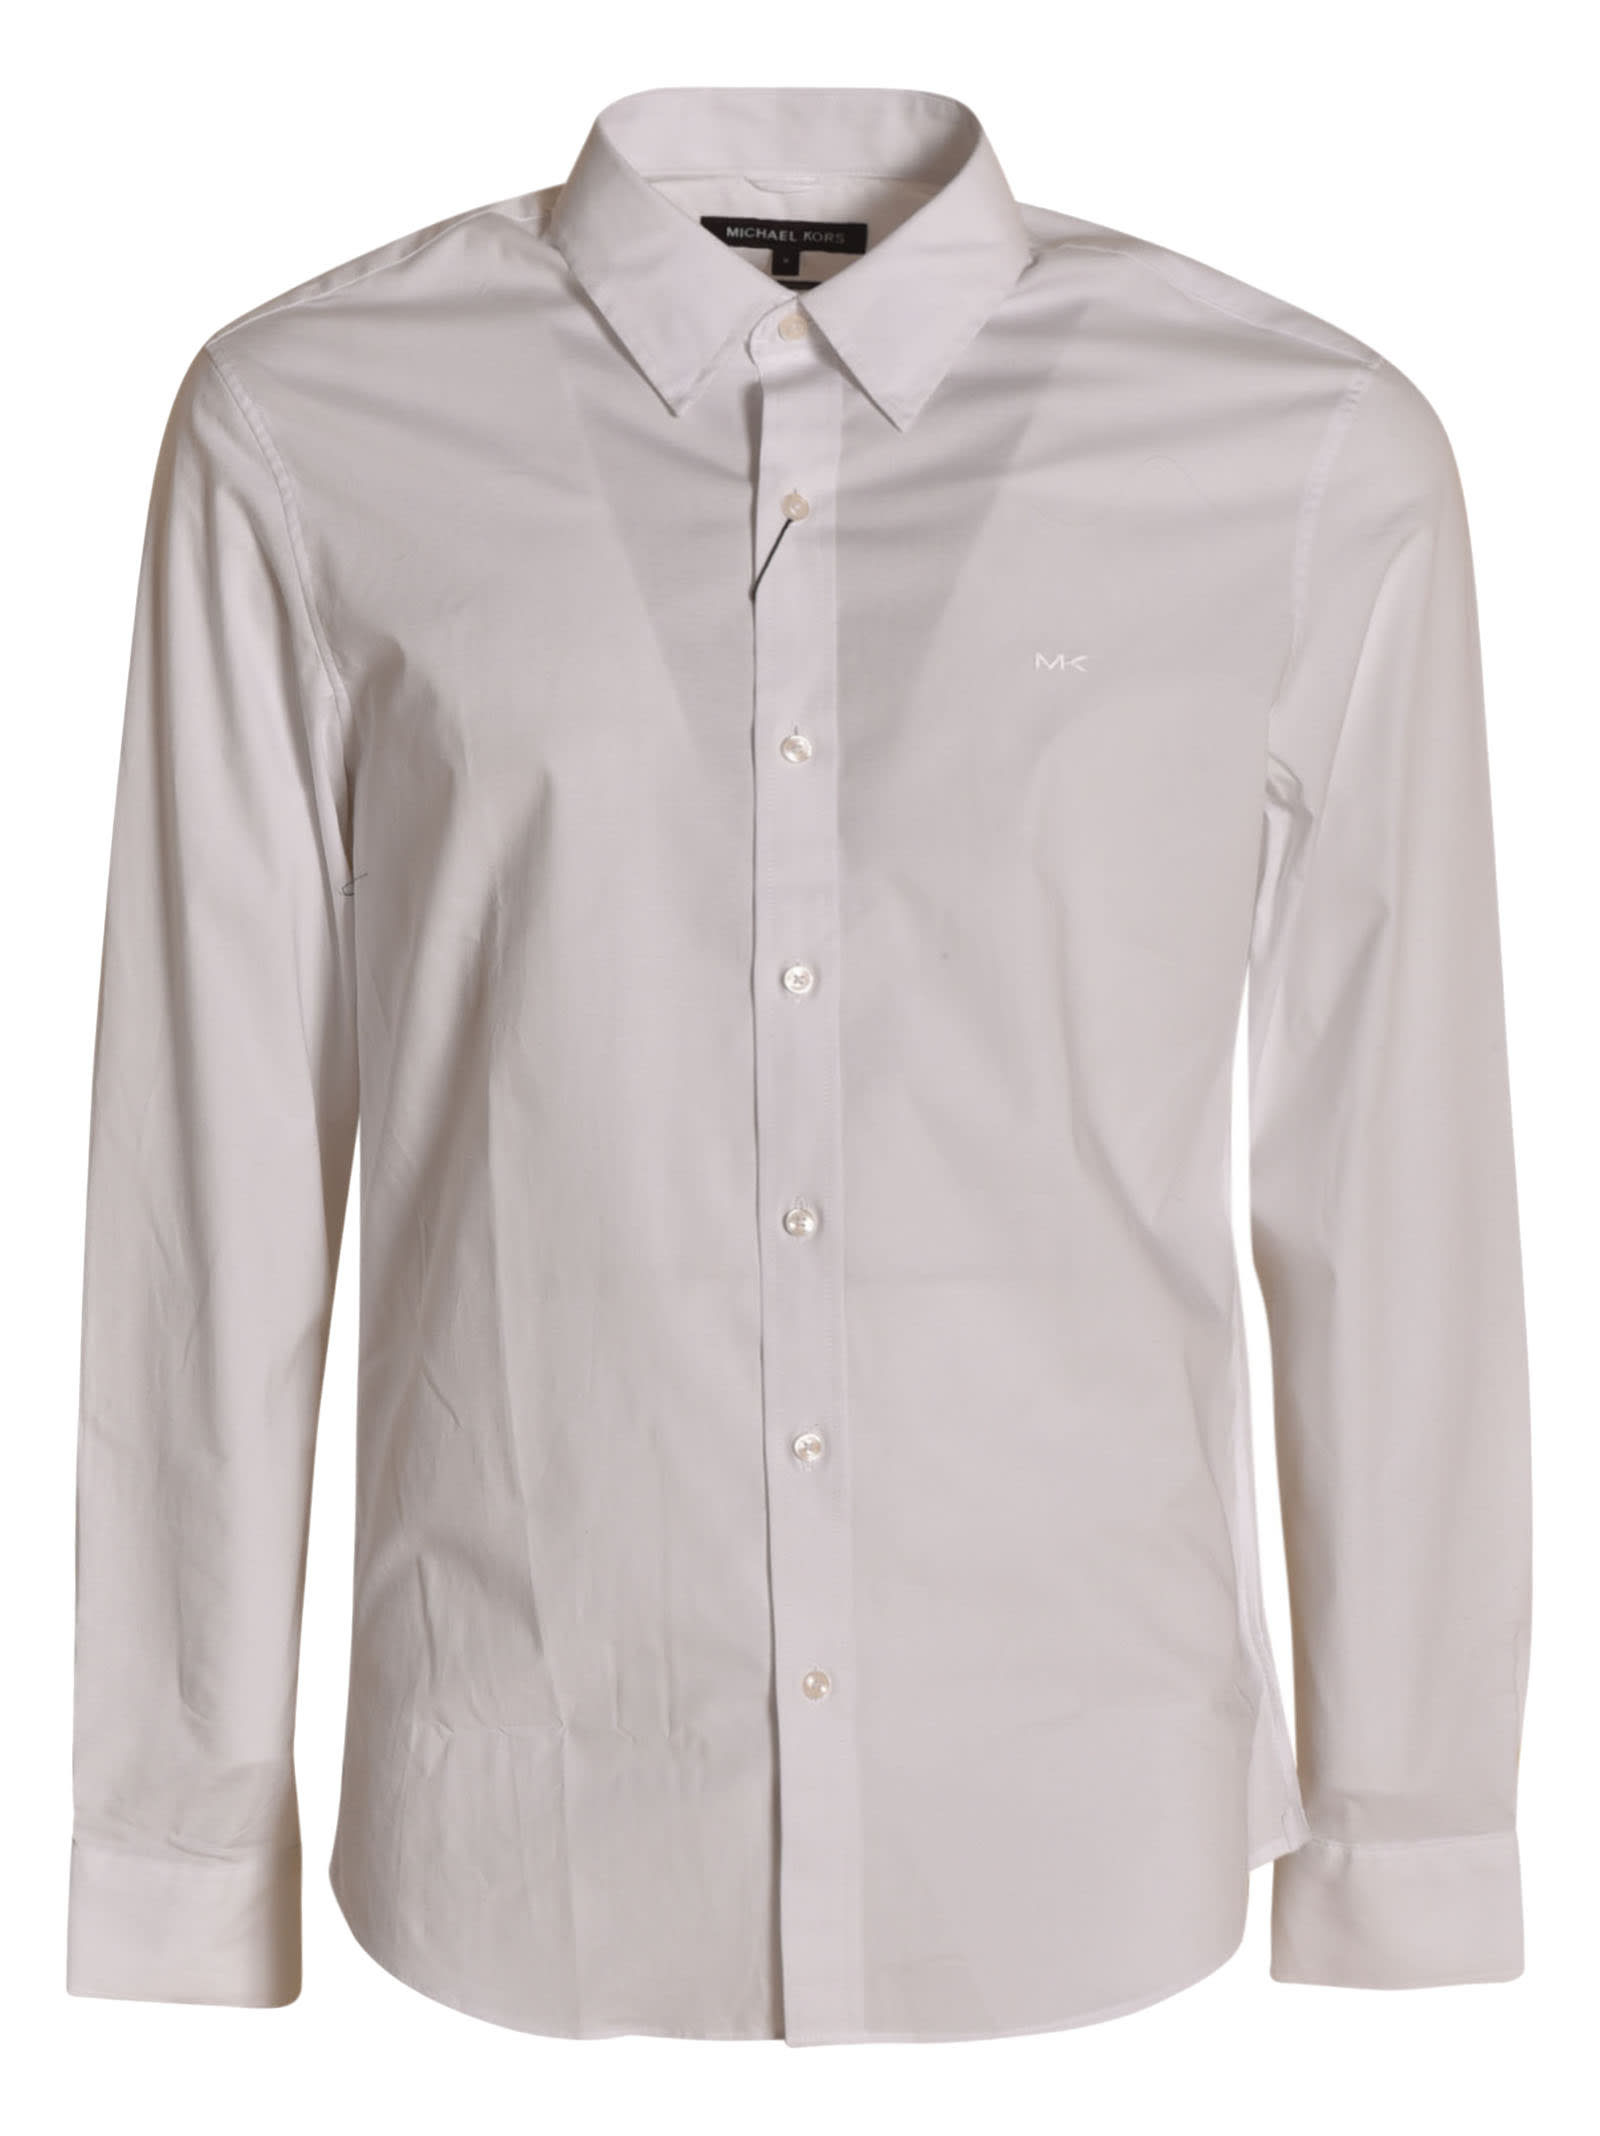 Michael Kors Basic Plain Shirt